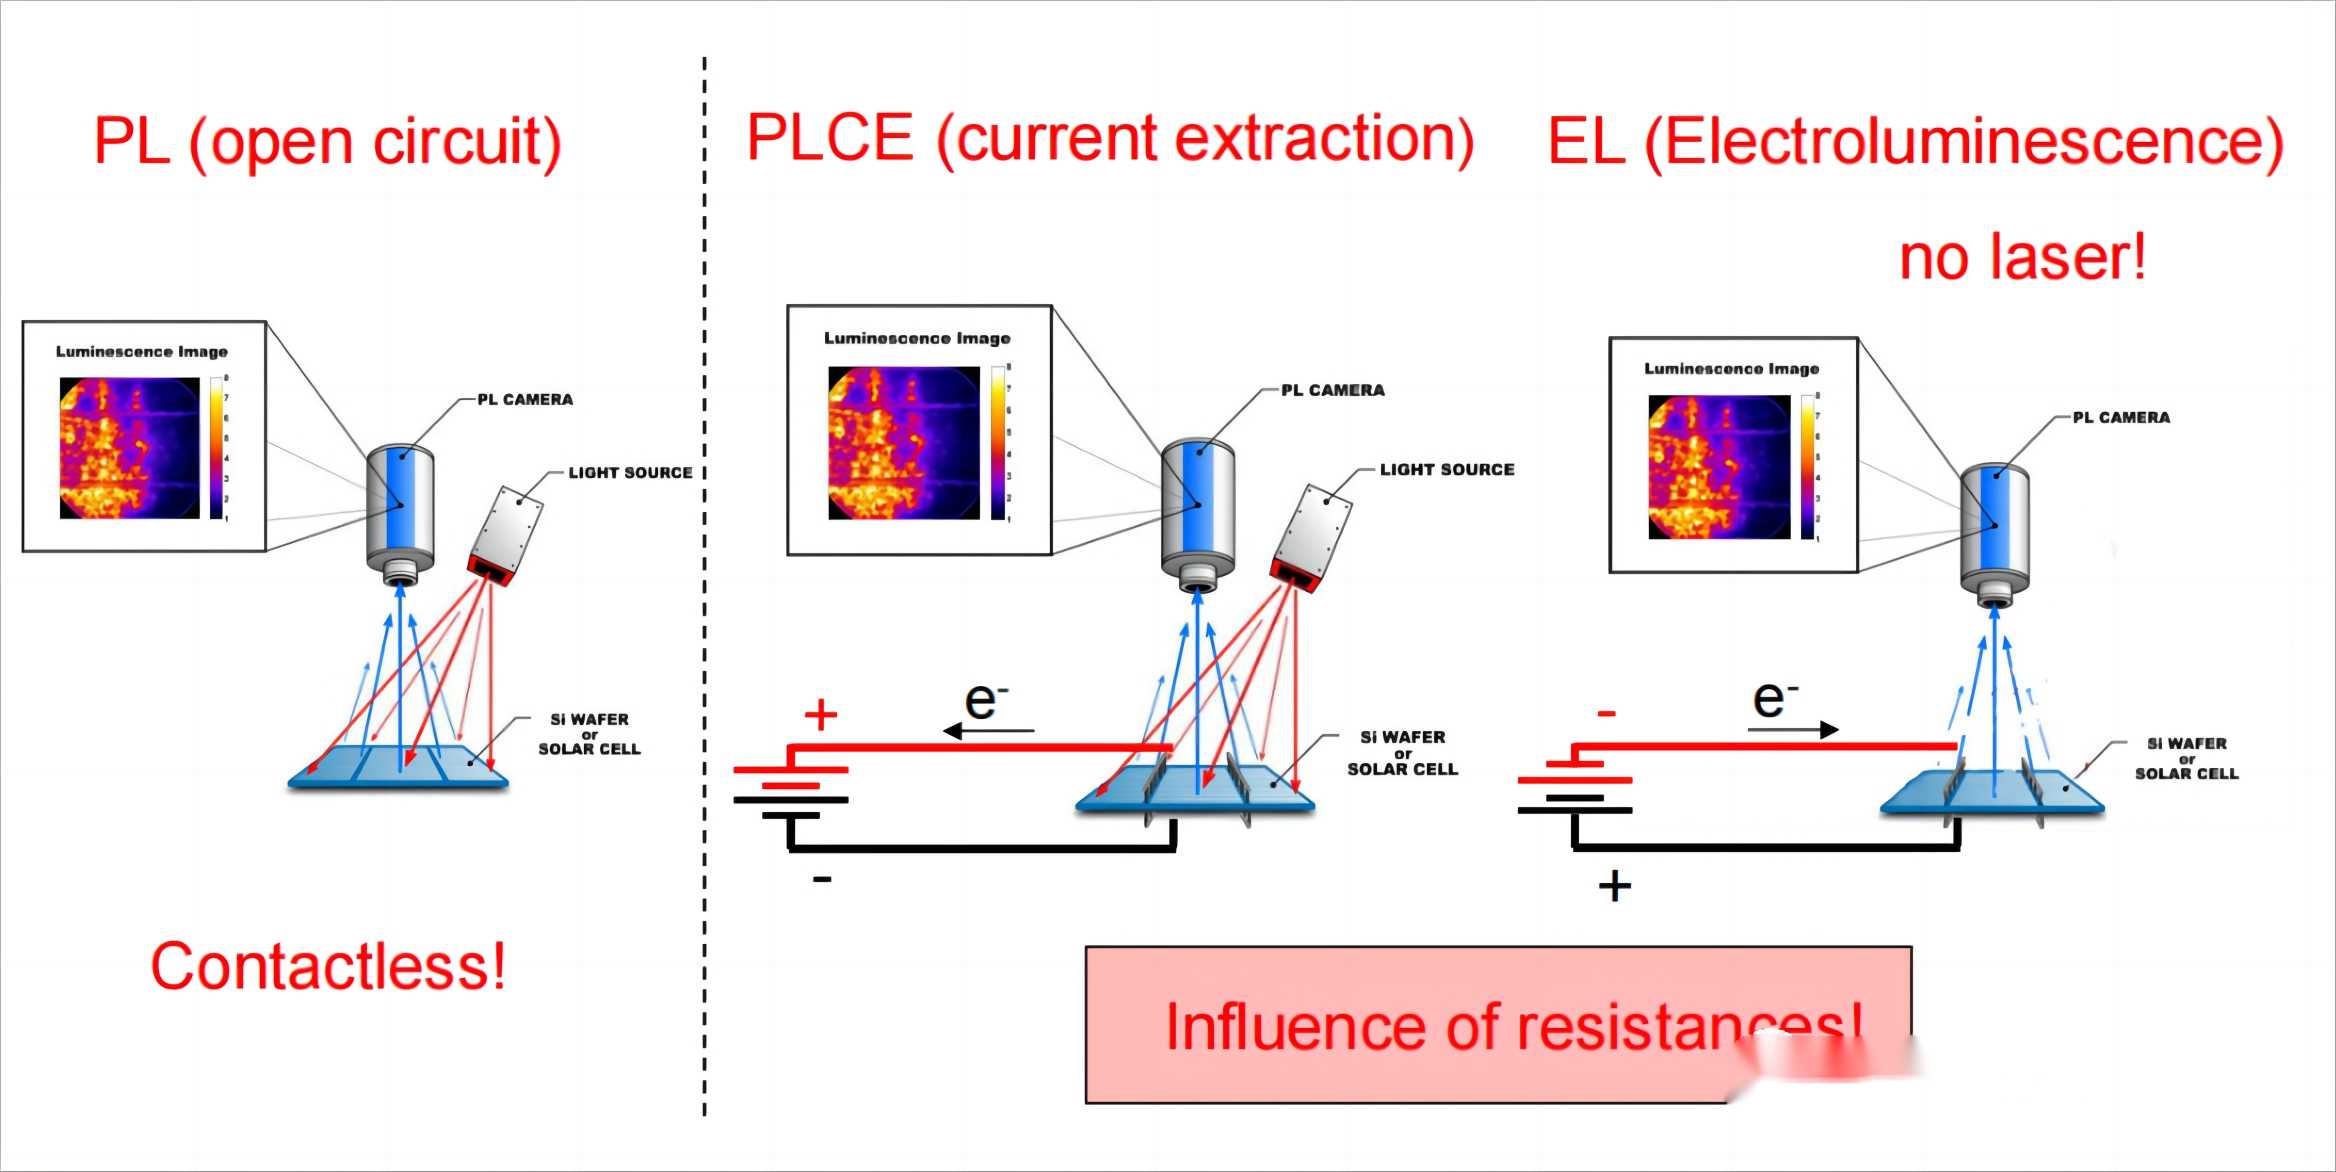 PL vs EL imaging analysis